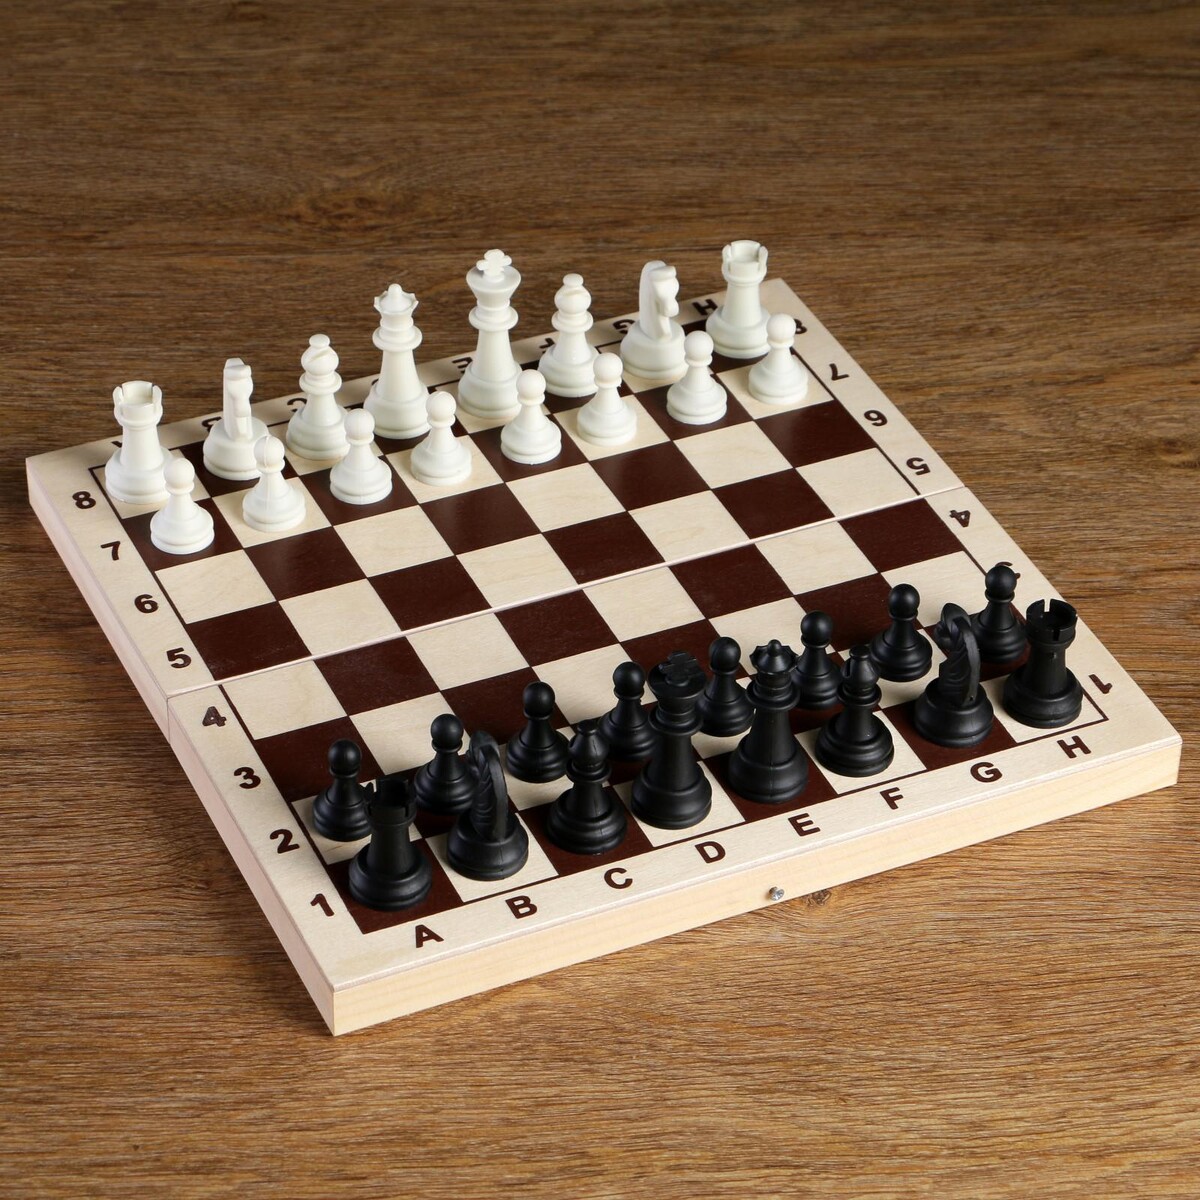 Шахматные фигуры, король h-6.2 см, пешка h-3.2 см, черно-белые александр l карагеоргиевич православный король югославии